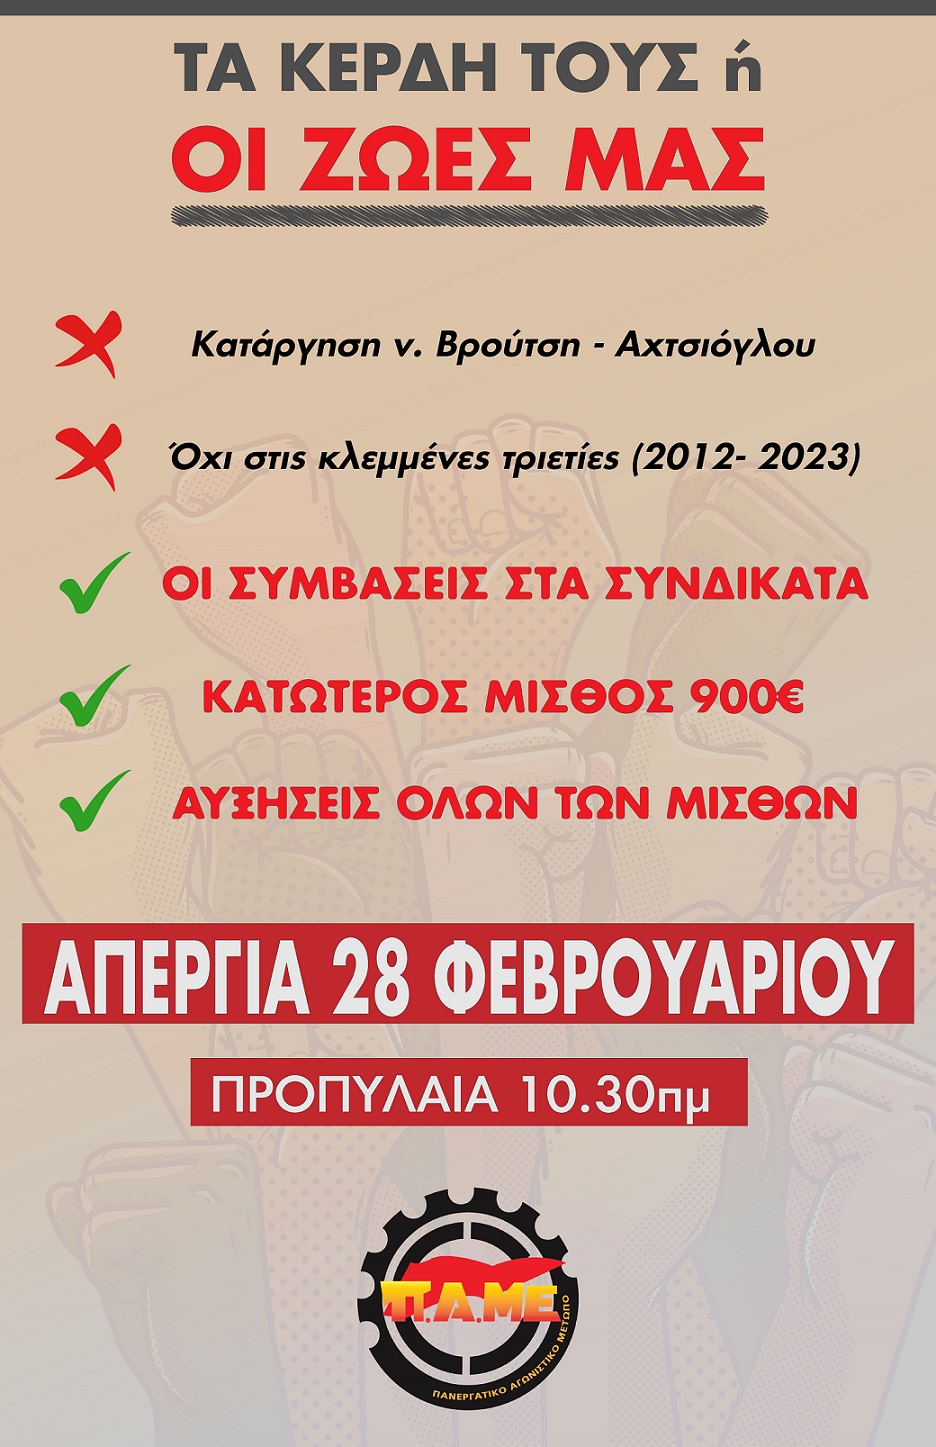 Grecia prepara una Enorme Huelga Nacional el 28 de febrero